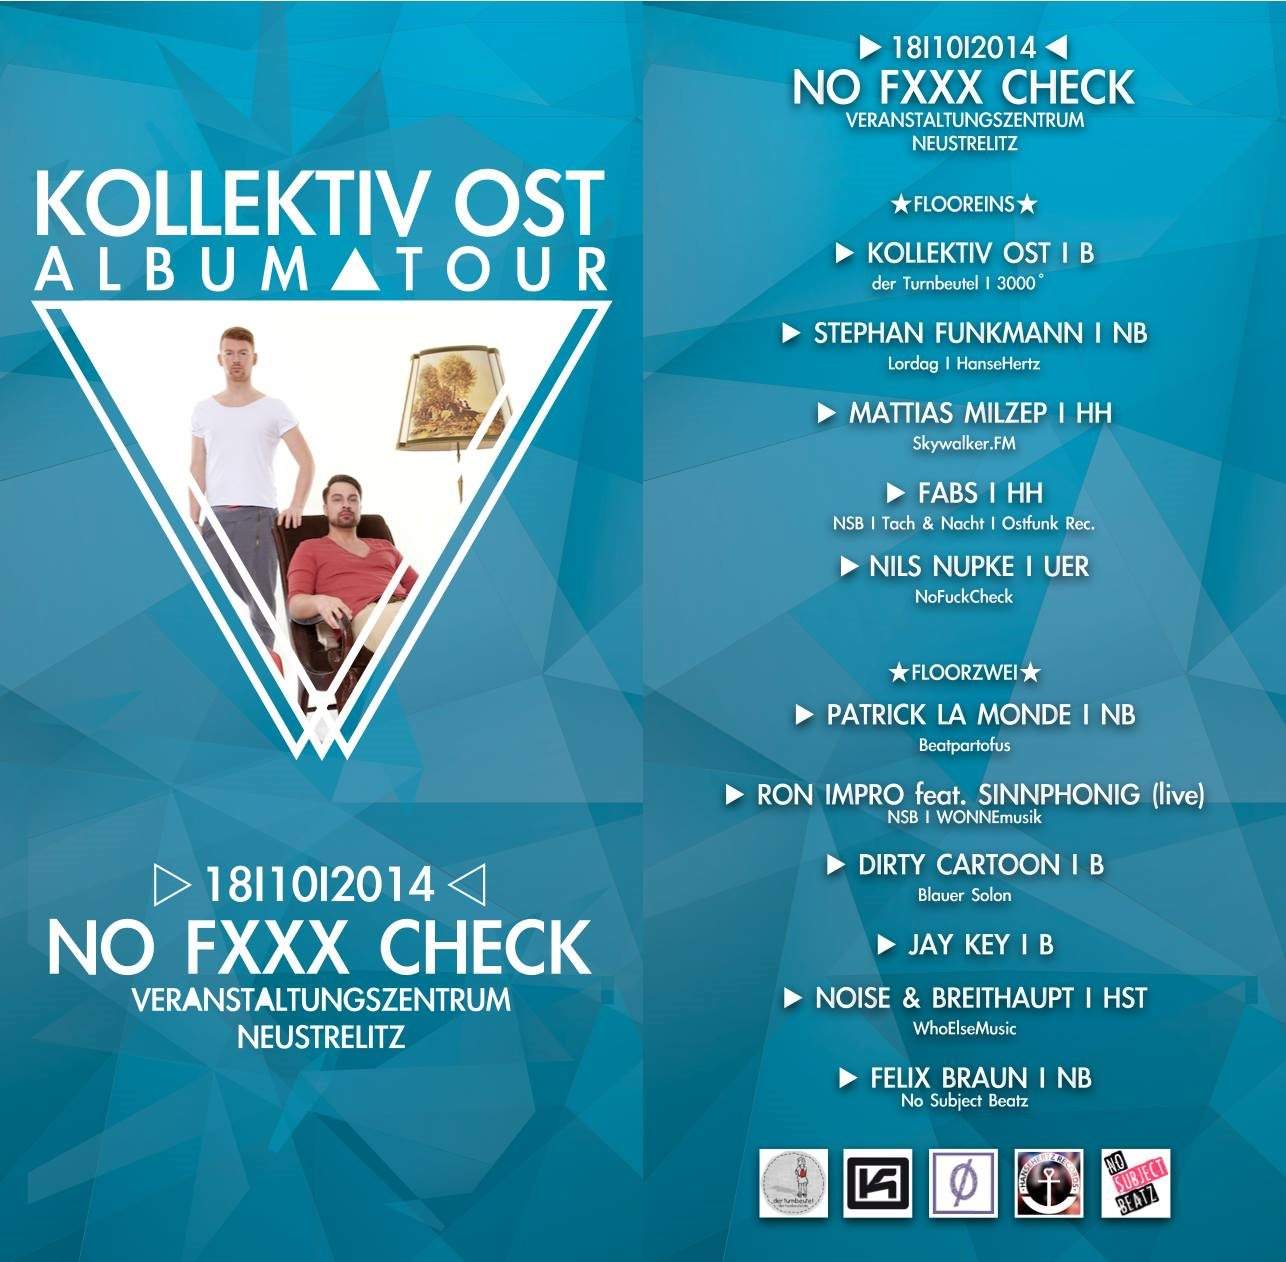 NO Fxxx Check (K.O. Album Tour) - フライヤー表